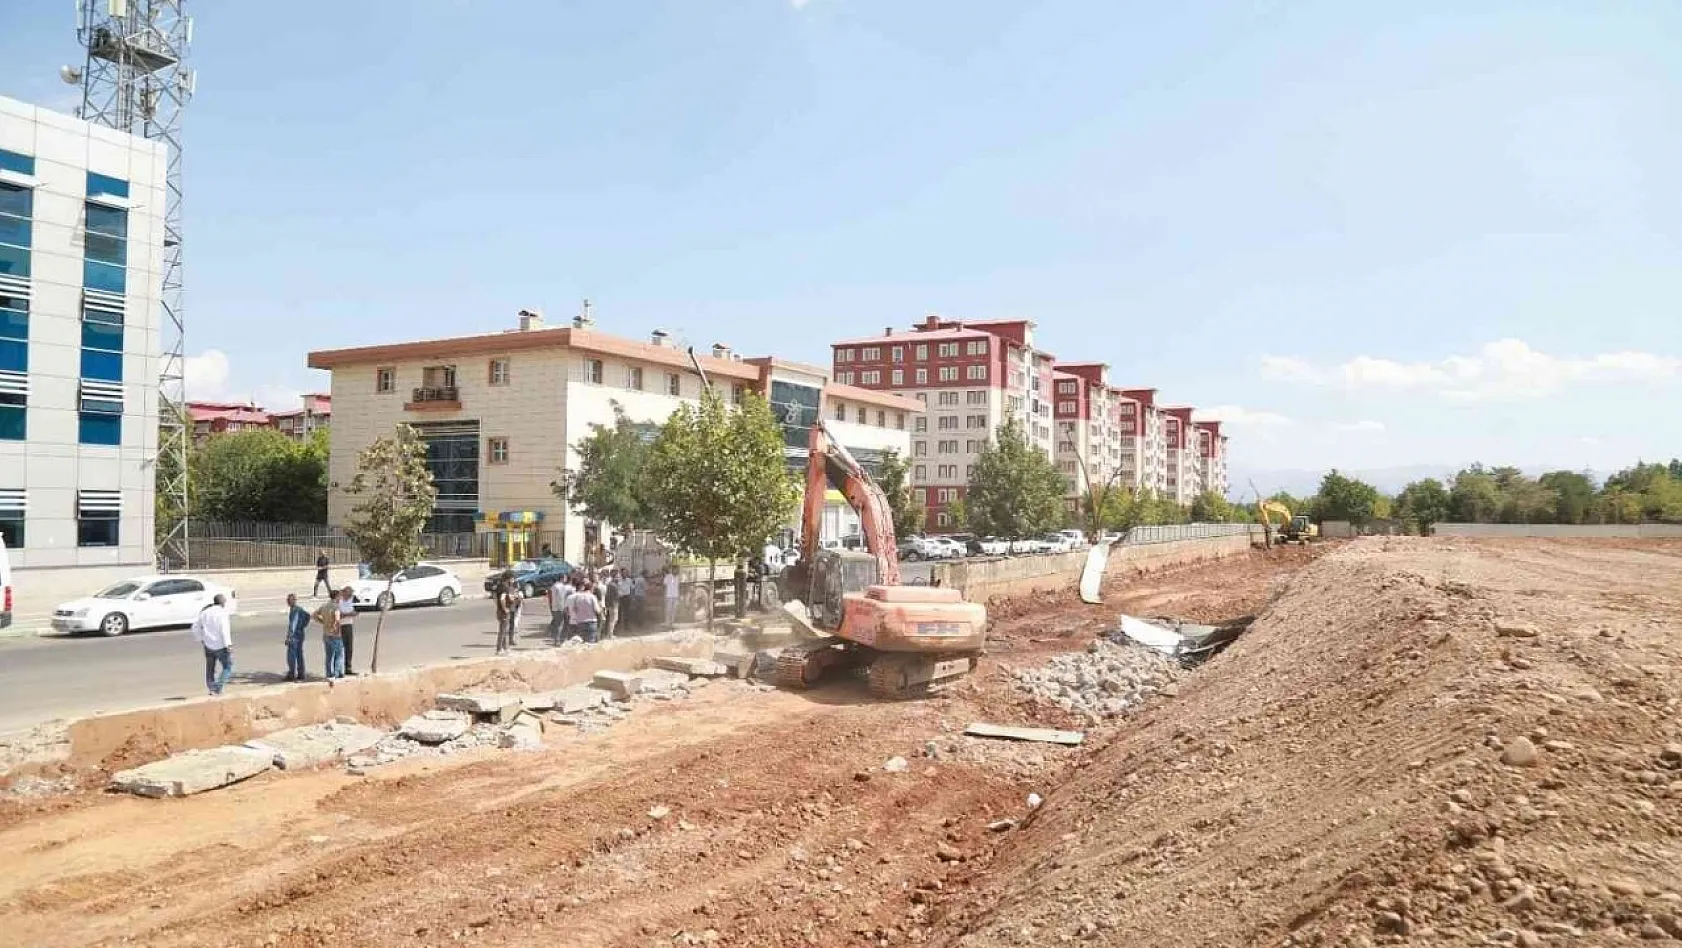 Bingöl Belediyesi caddeyi genişletmek için askeriyenin duvarını yıktı